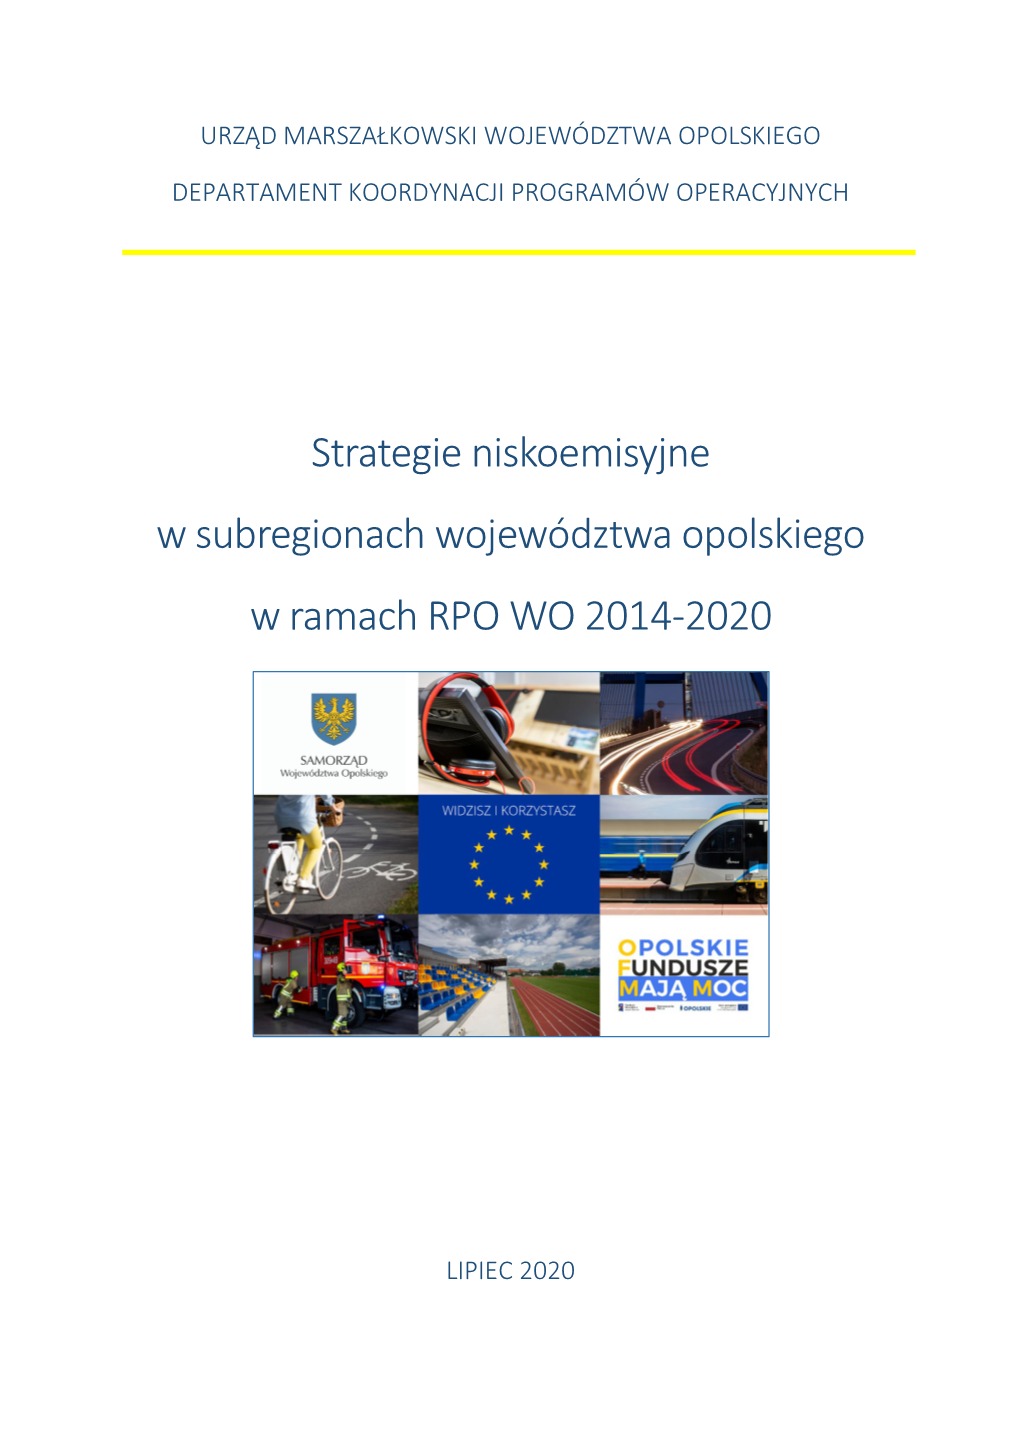 Strategie Niskoemisyjne RPOWO 2014-2020